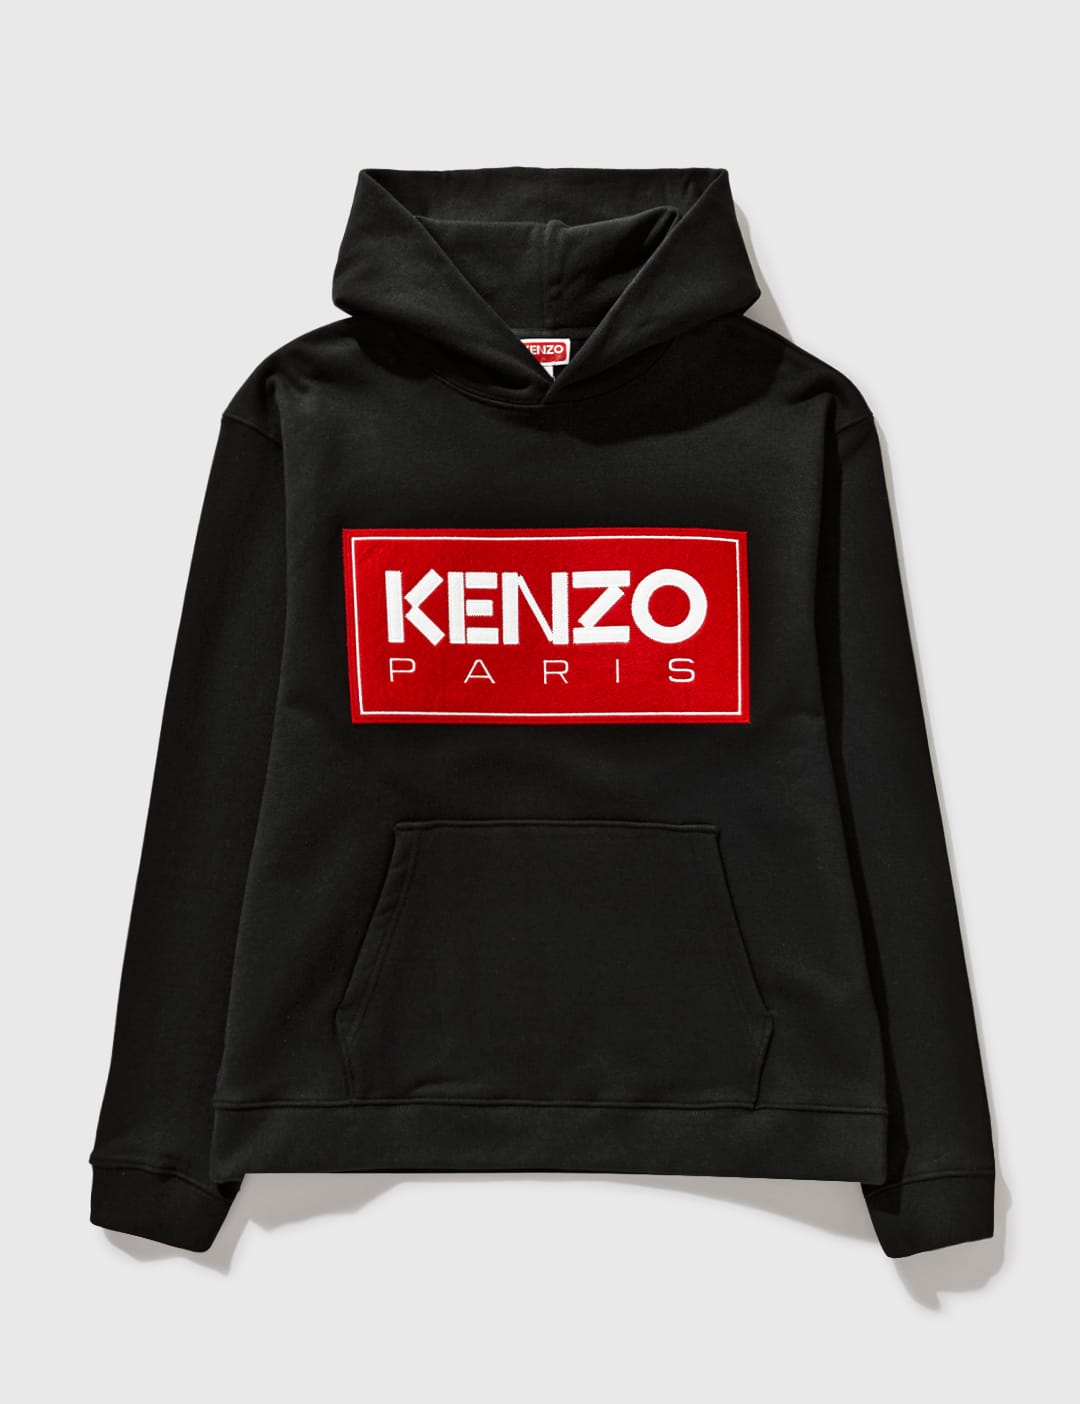 KENZO Paris Hooded Sweatshirt